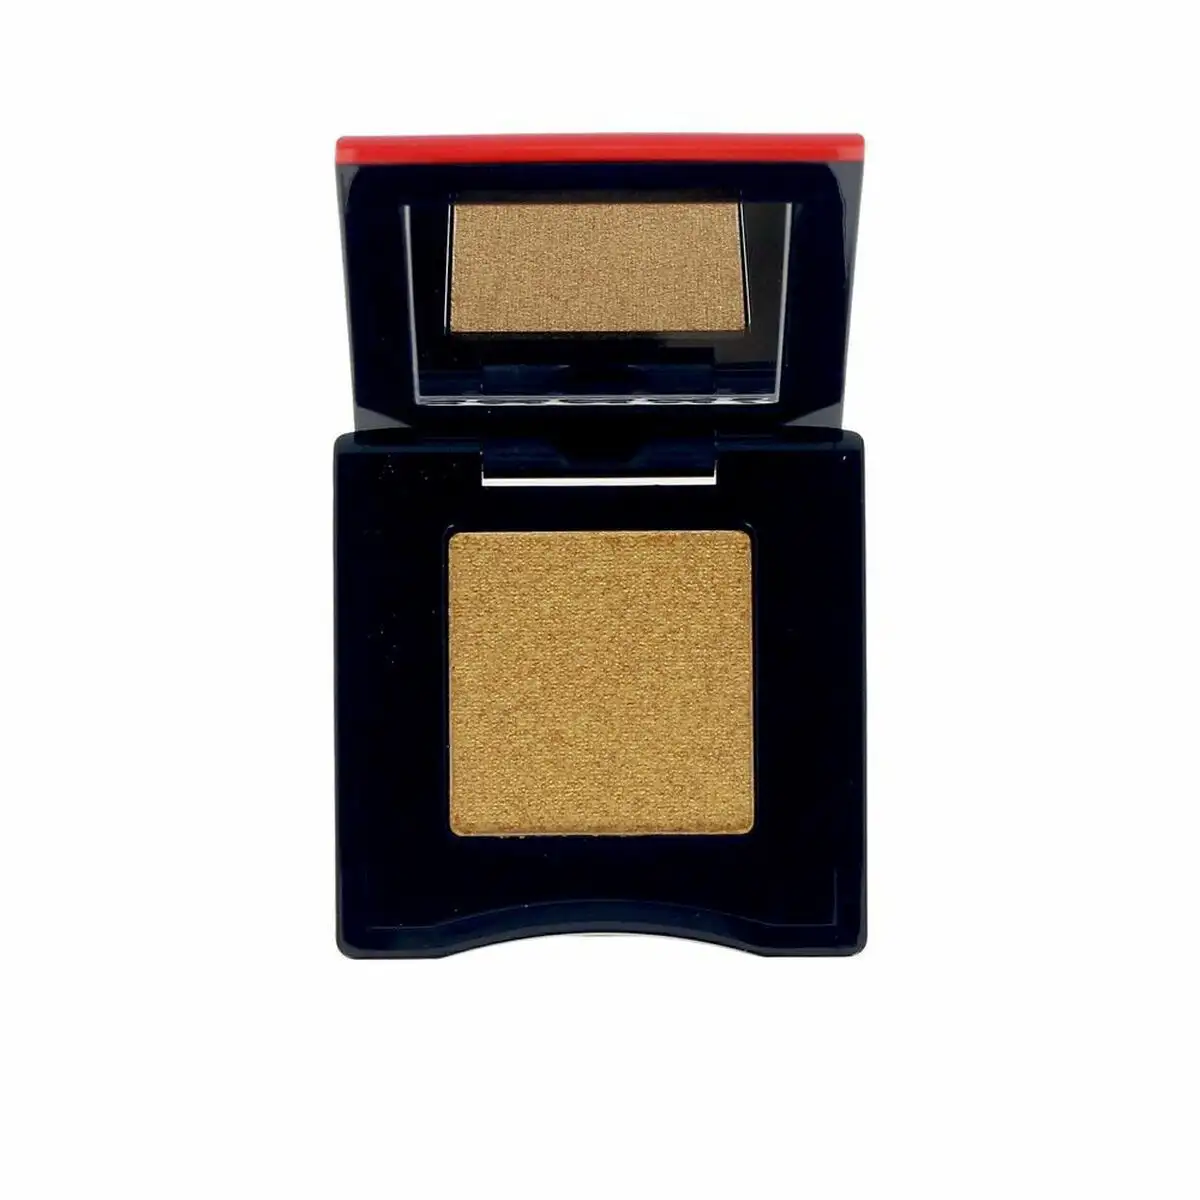 Ombre a paupieres shiseido pop 13 sparkling gold 2 5 g _5644. DIAYTAR SENEGAL - Votre Destination Shopping de Confiance. Naviguez à travers notre boutique en ligne et profitez d'une sélection soigneusement choisie de produits qui répondent à toutes vos exigences.